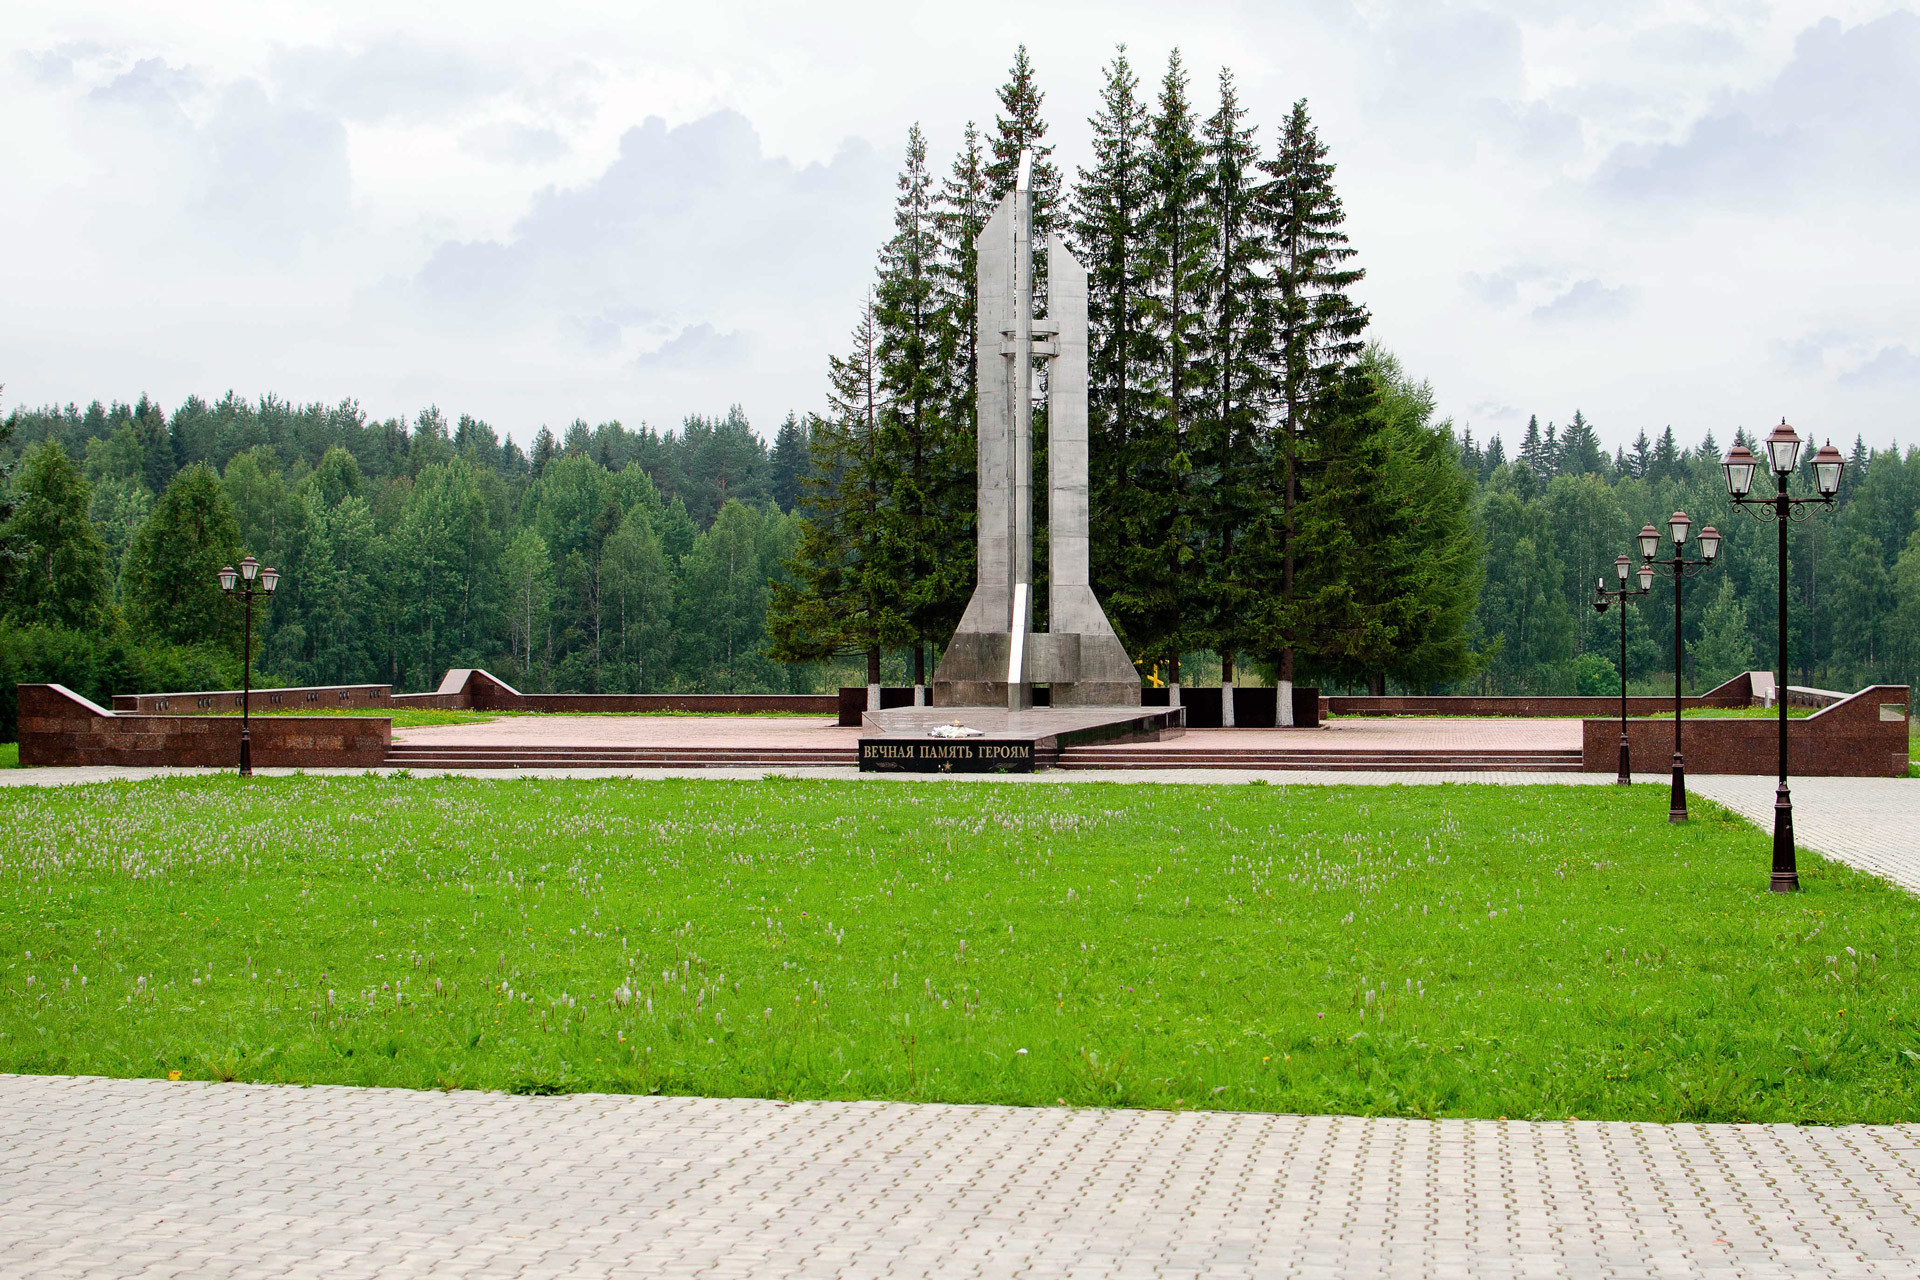 Spomenik na groblju posvećen Pleseckoj tragediji.

